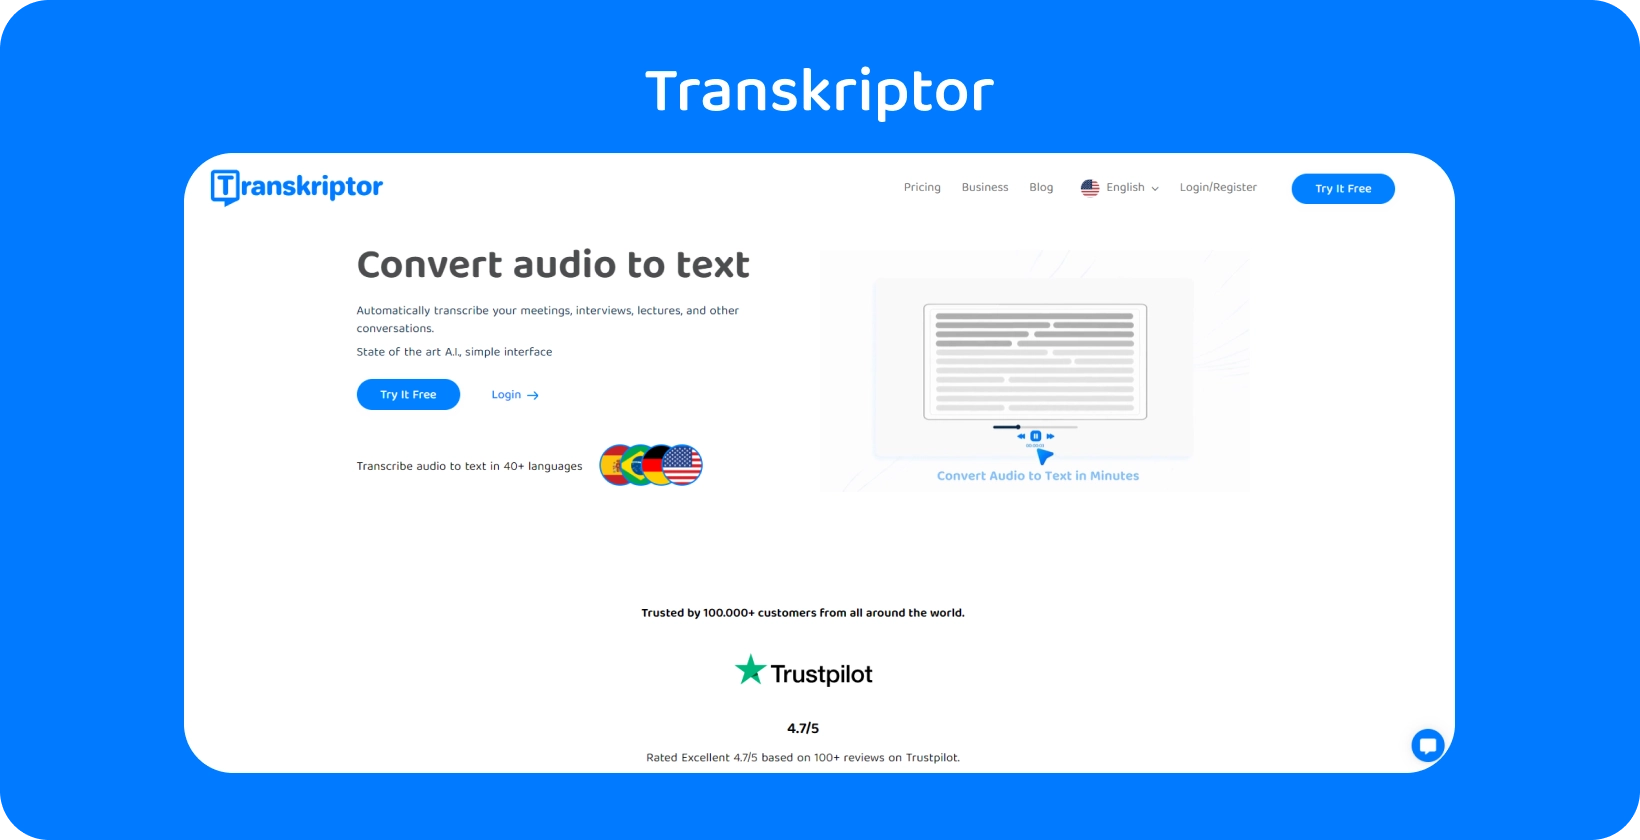 La interfaz de Transkriptor muestra la función de asistente de reuniones, lo que agiliza la transcripción de investigaciones cualitativas.